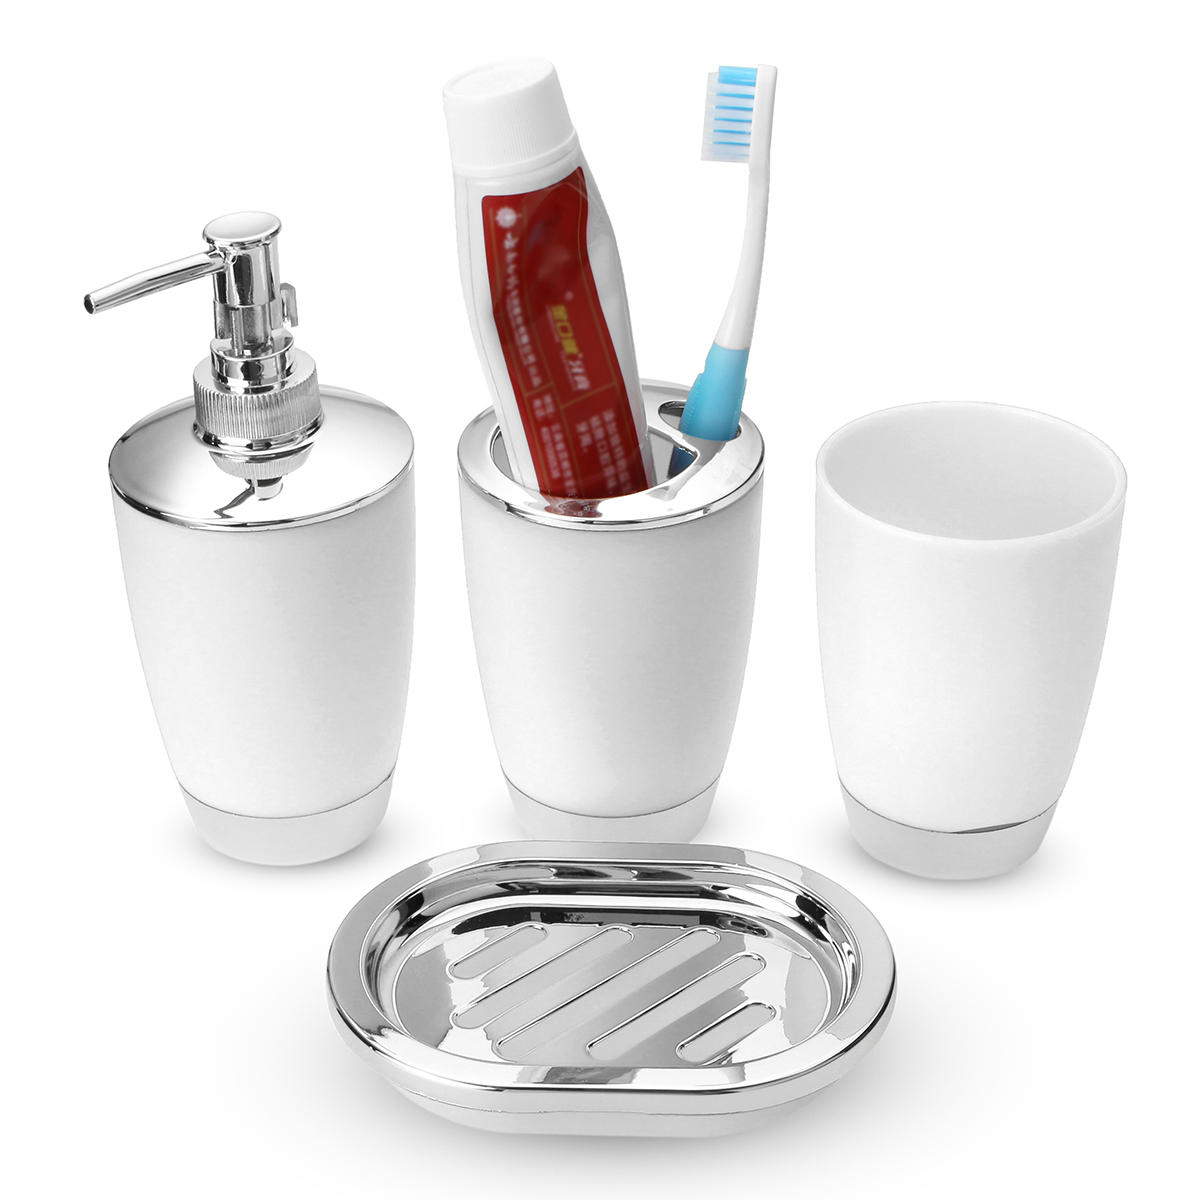 4 stuks Plastic Badkamer Set Beker Tandenborstelhouder Zeepbakje Dispenser Fles Wasruimte Accessoire